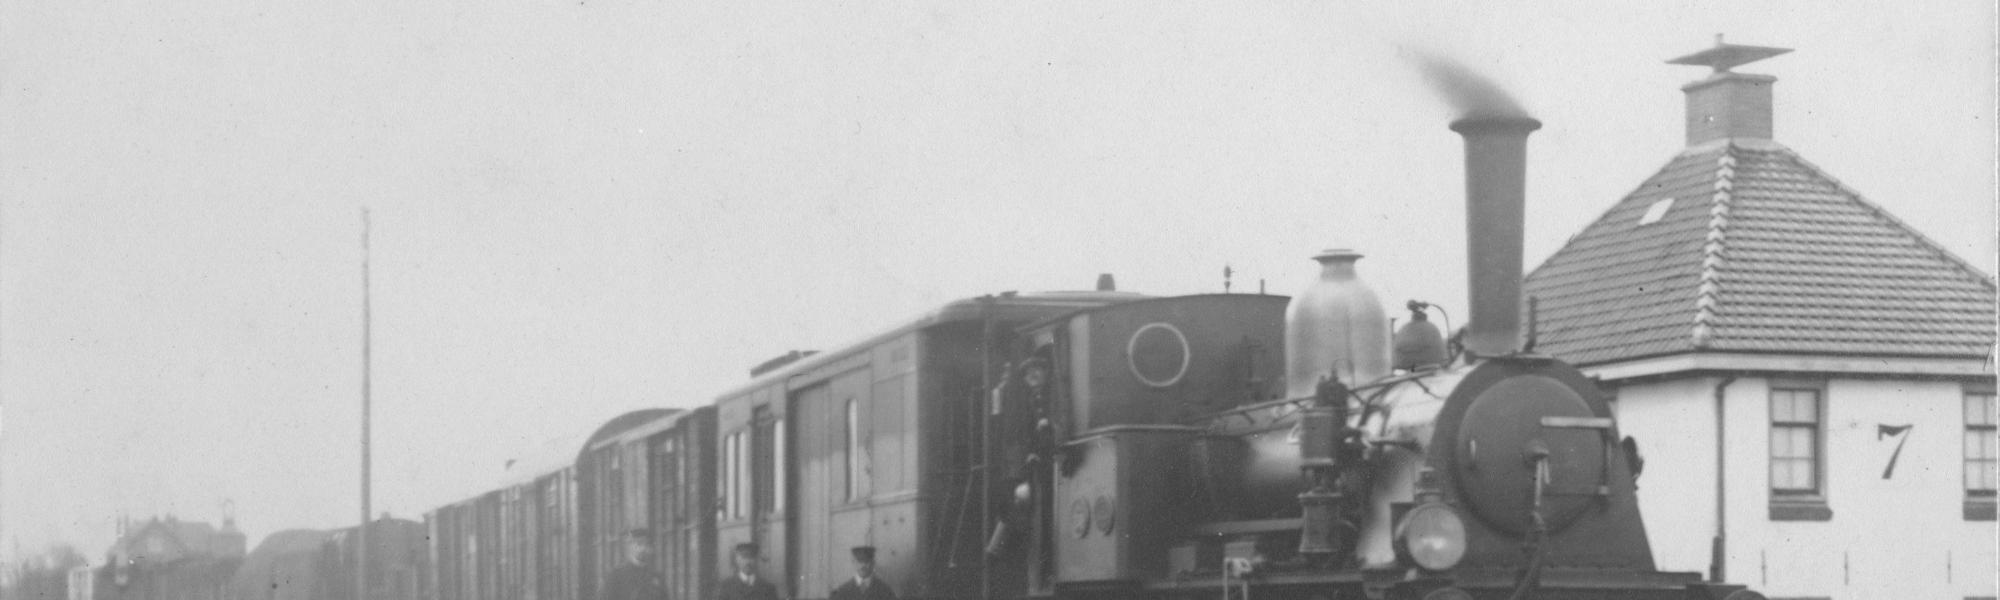 Historisch beeld van Haarlemmermeerspoorlijn